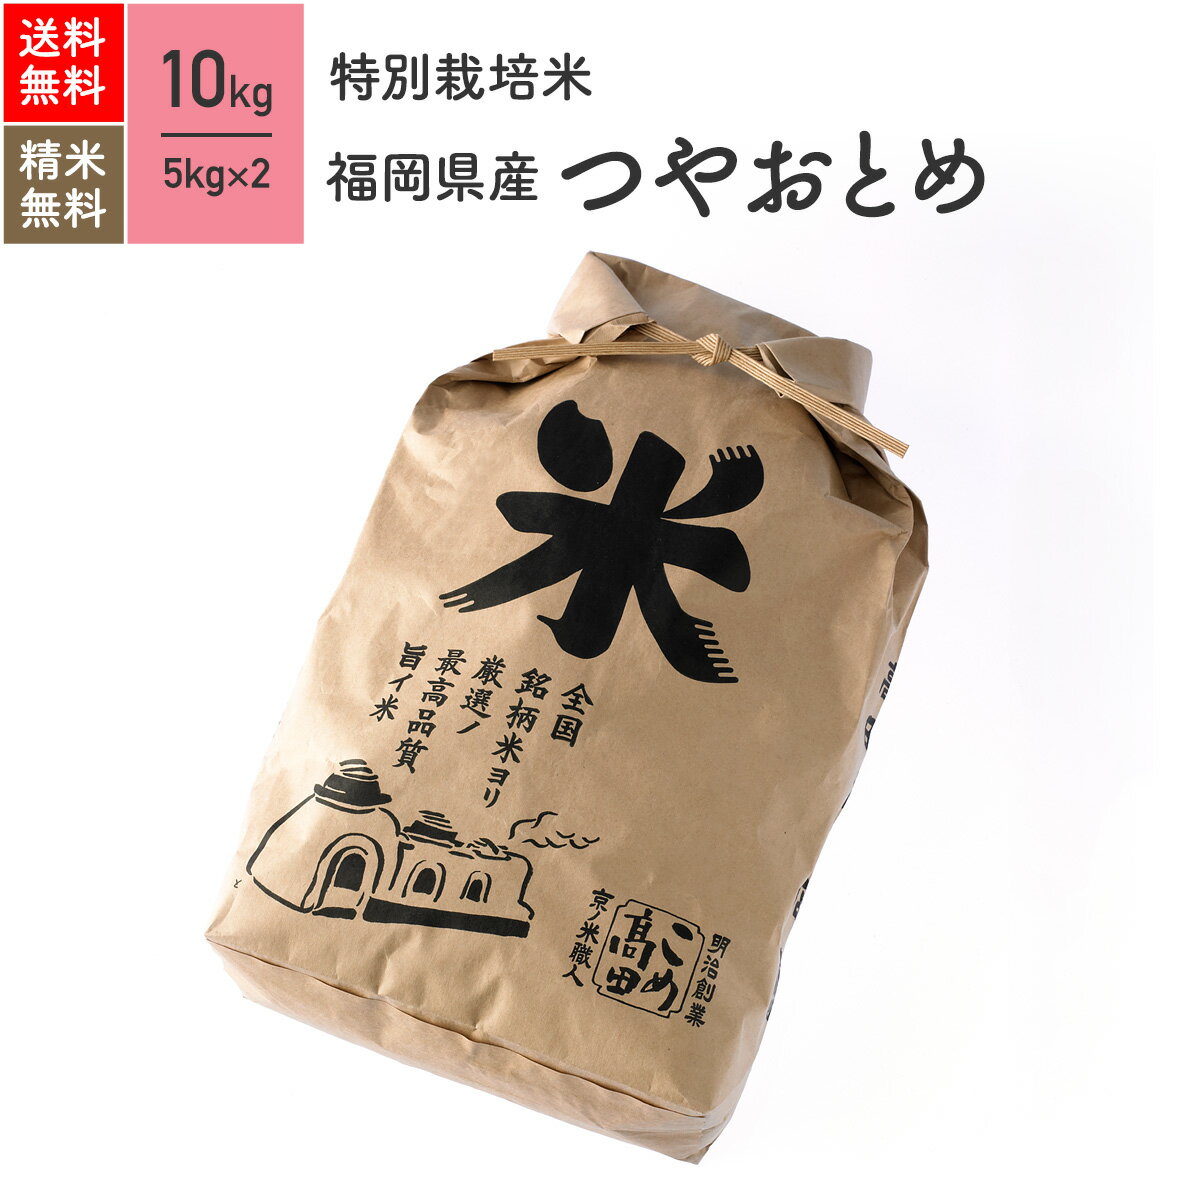 10kg つやおとめ 福岡県産 特別栽培米 令和5年産 送料無料お米 分つき米 玄米 1